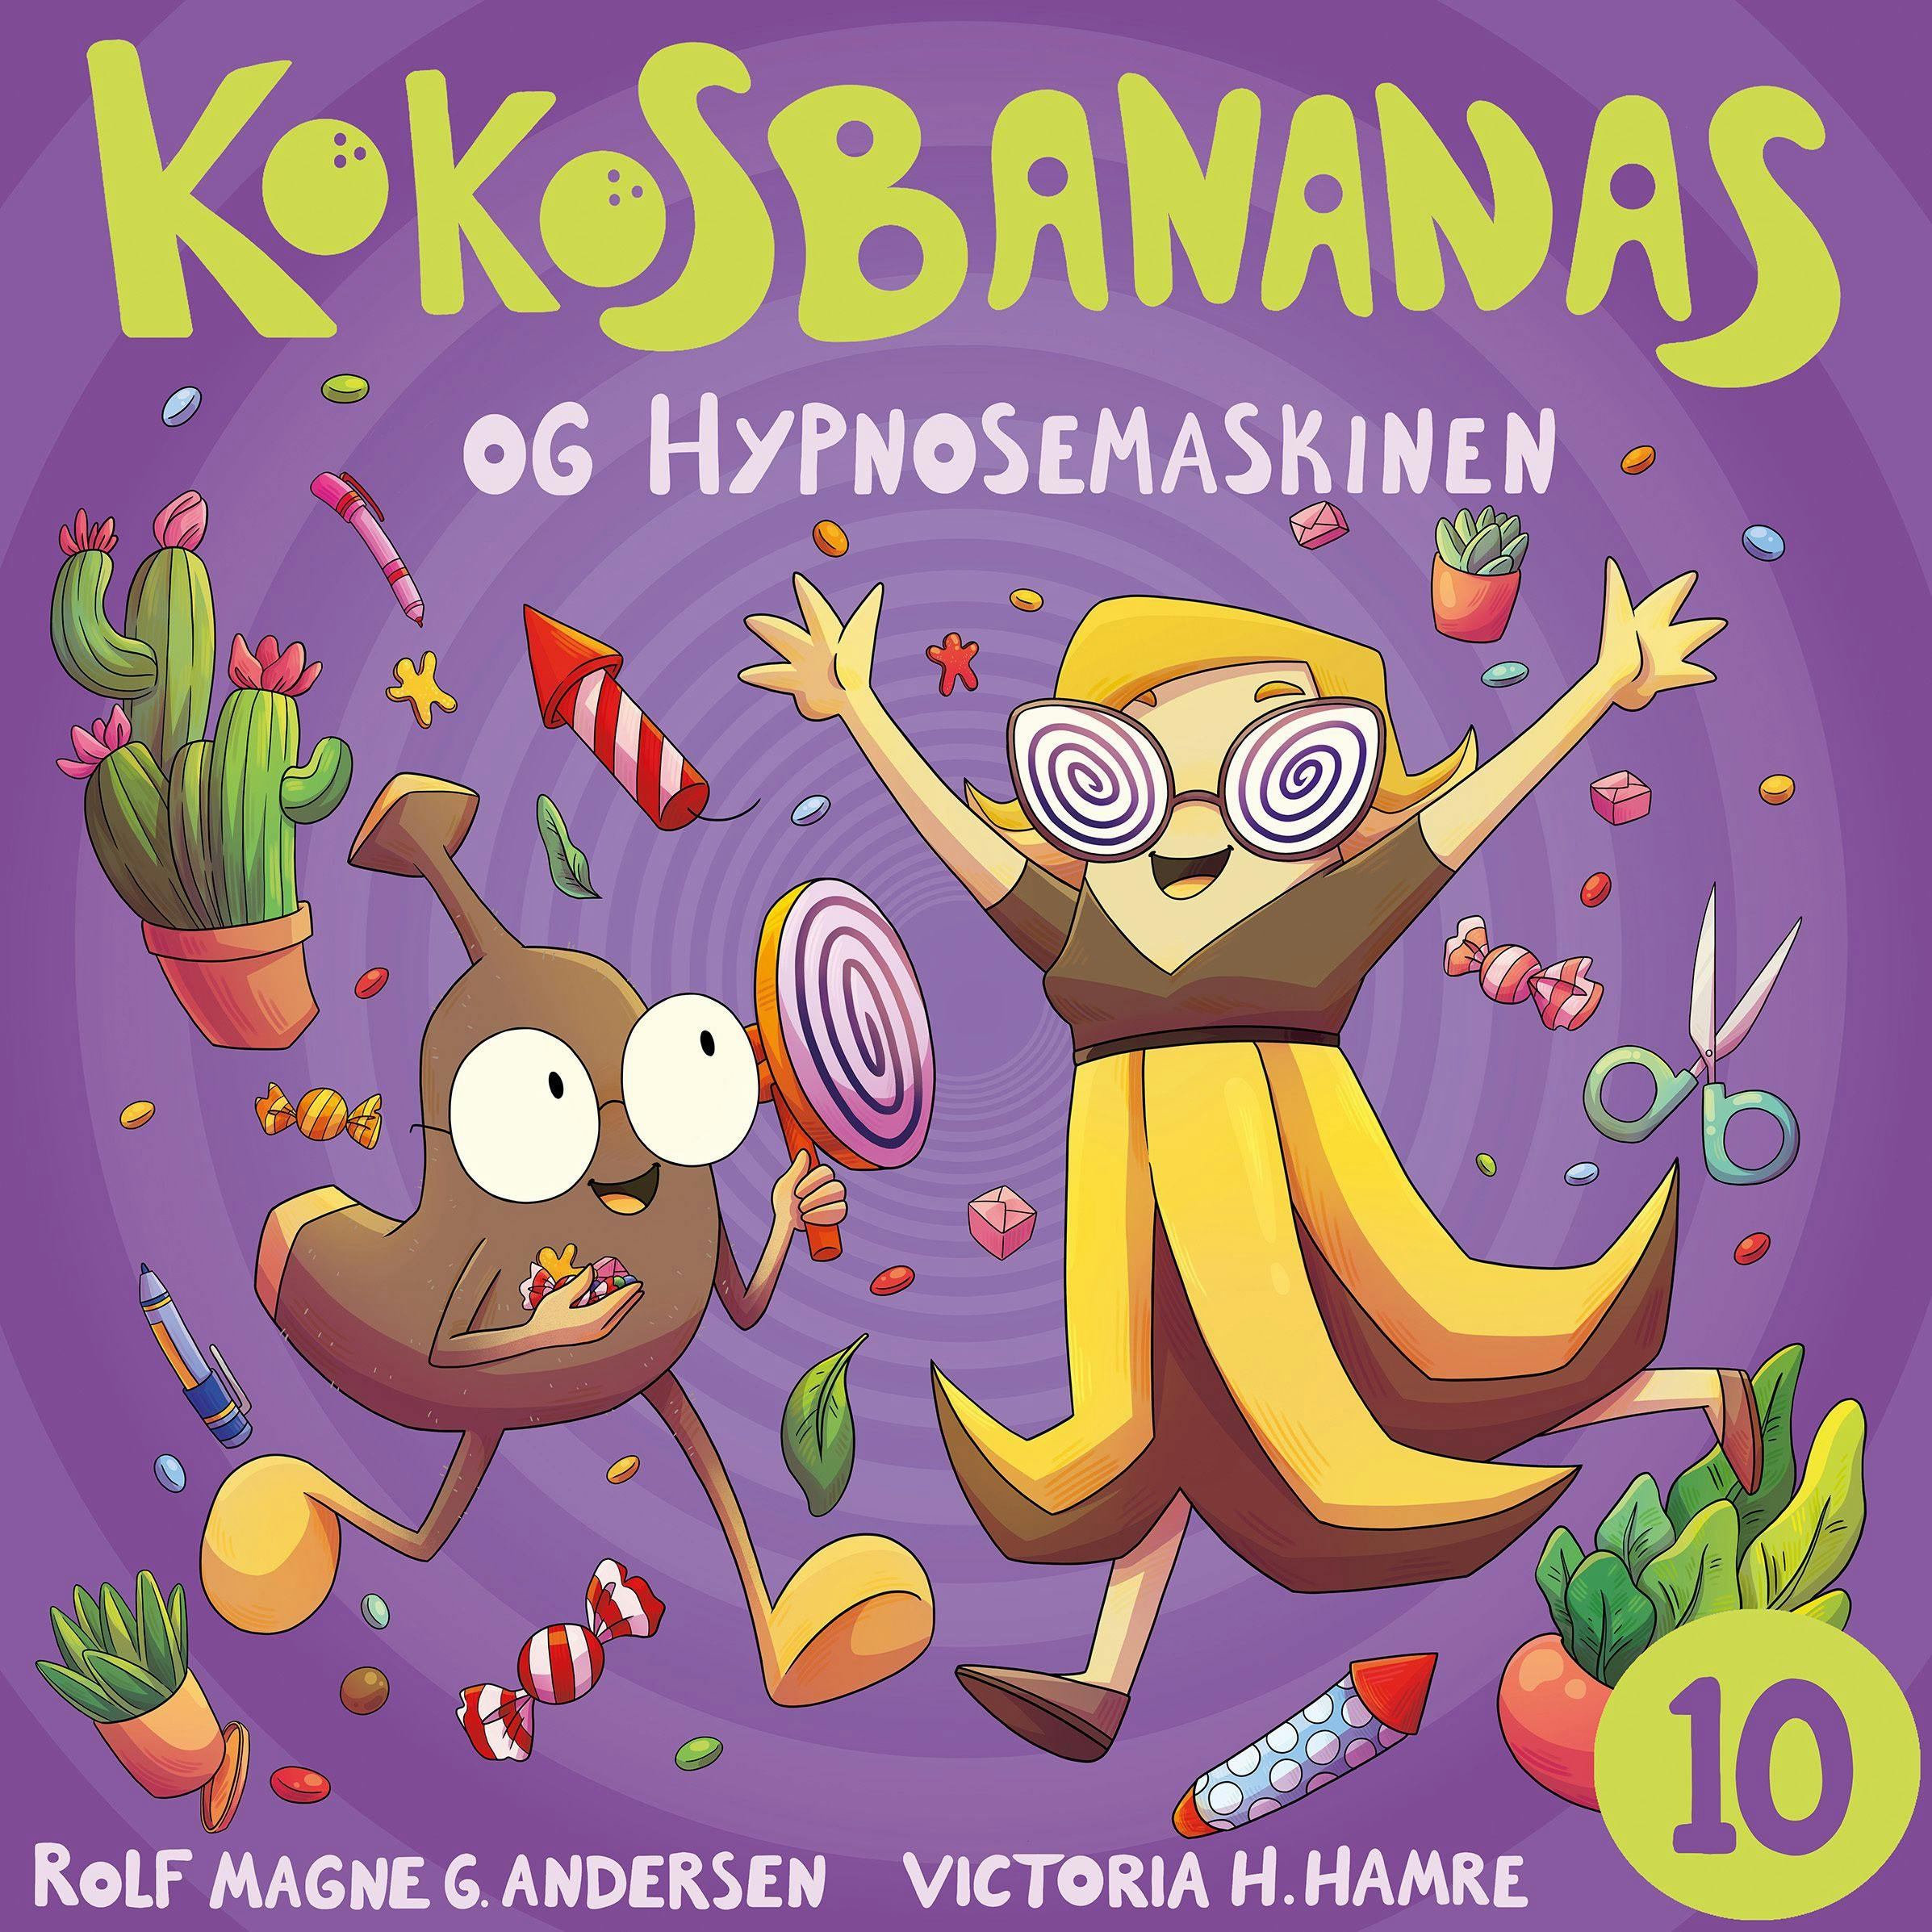 Kokosbananas og hypnosemaskinen - Rolf Magne Andersen